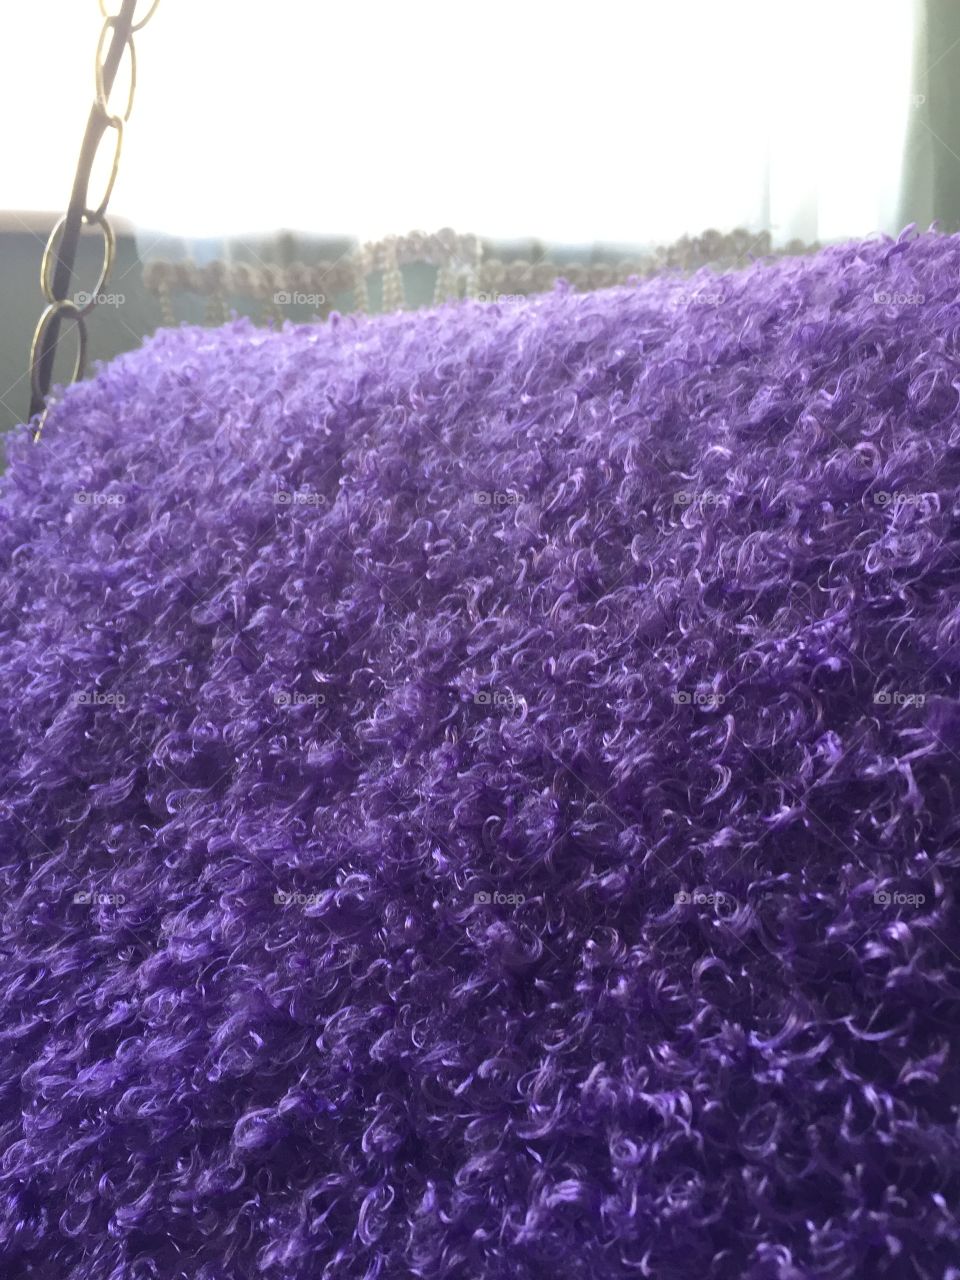 Fuzzy purple blanket